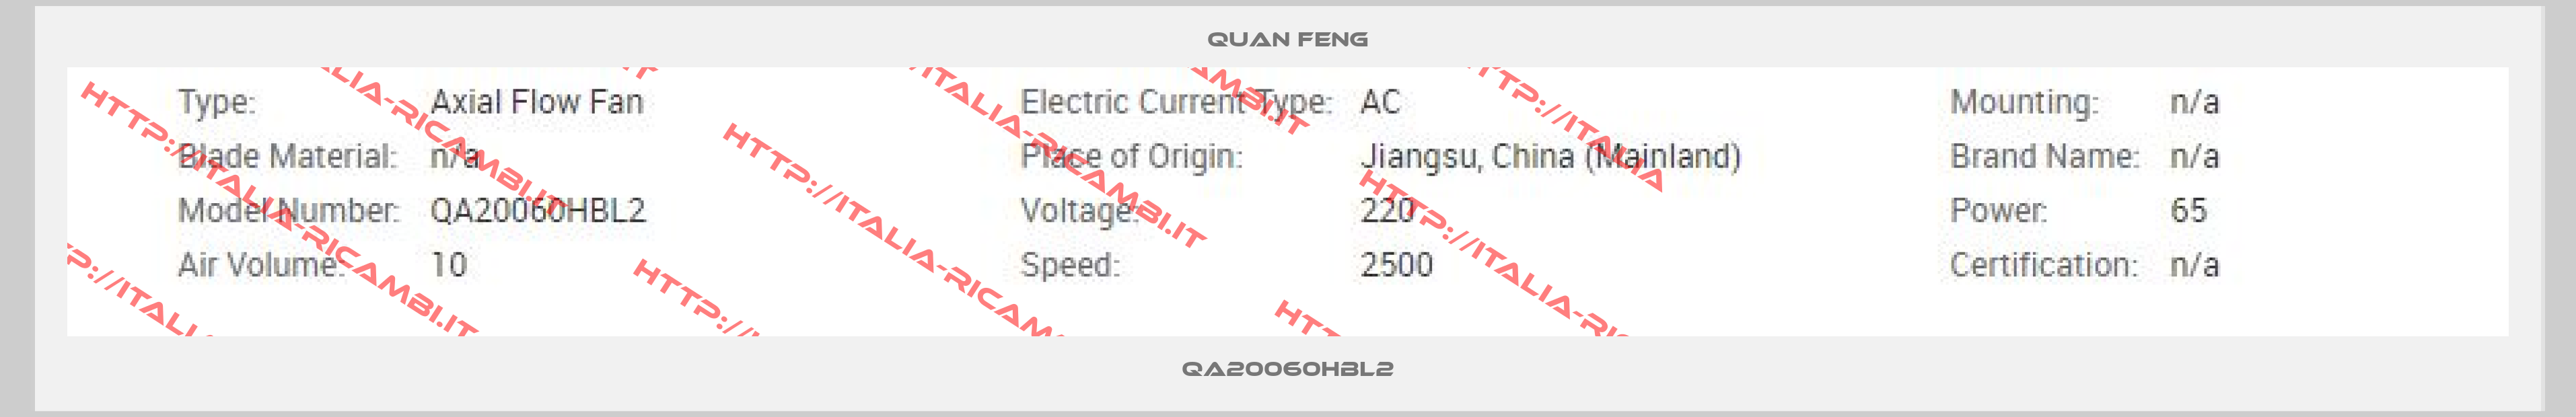 QUAN FENG-QA20060HBL2